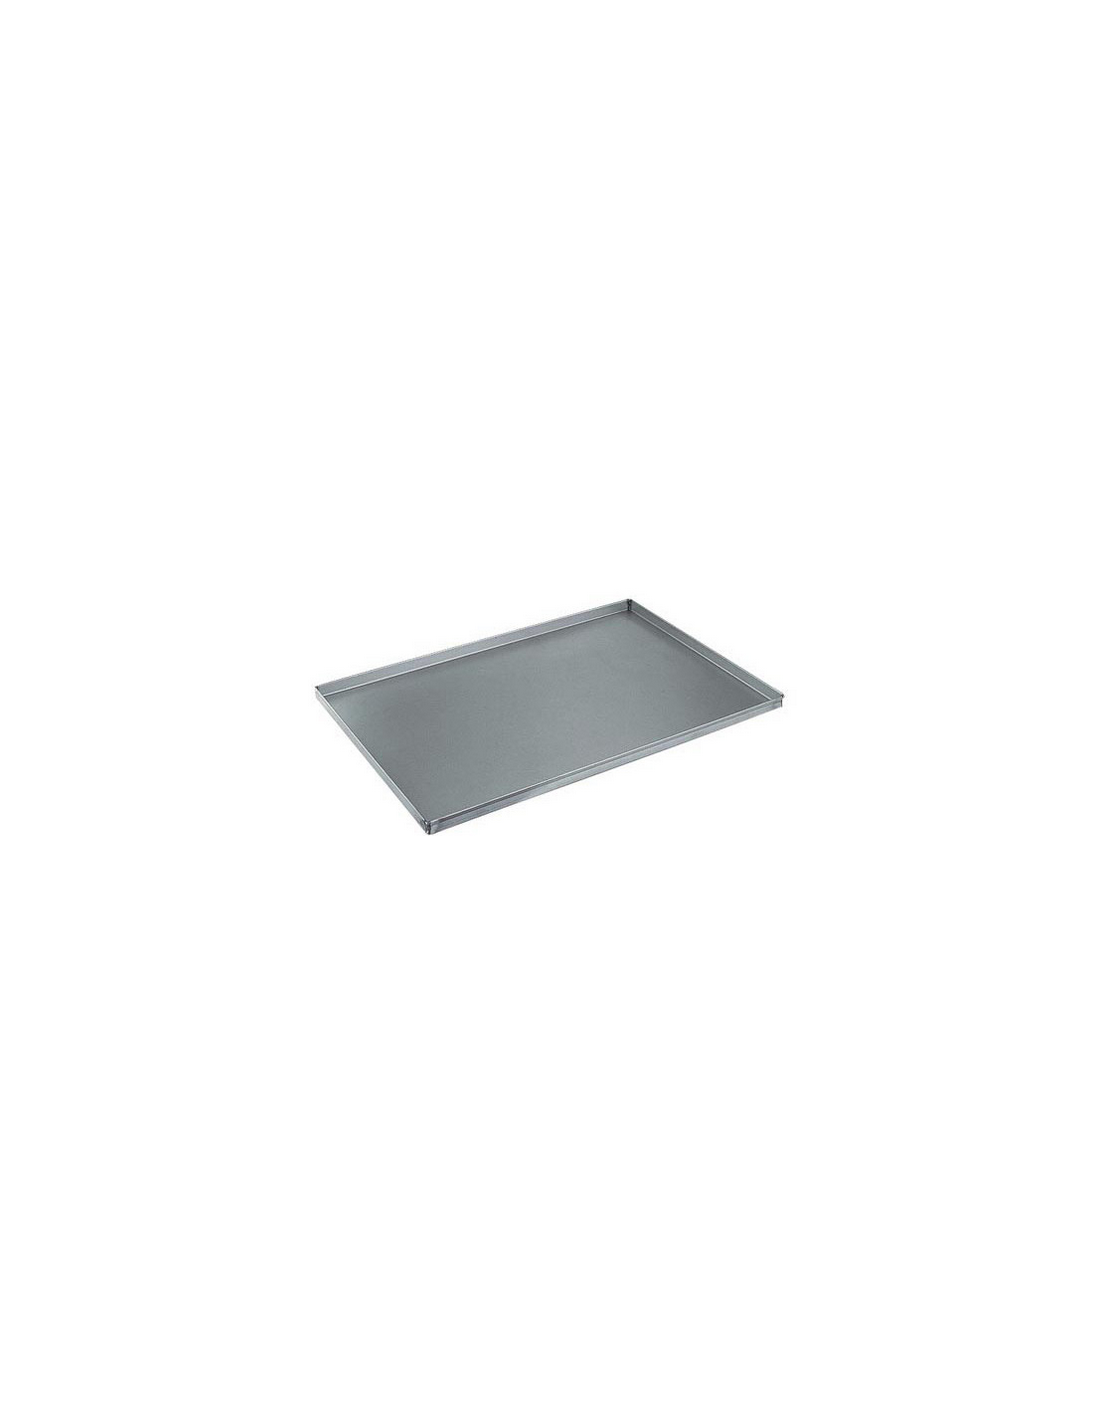 Bandeja de aluminio EN cm 60 x 40 - h 20 mm